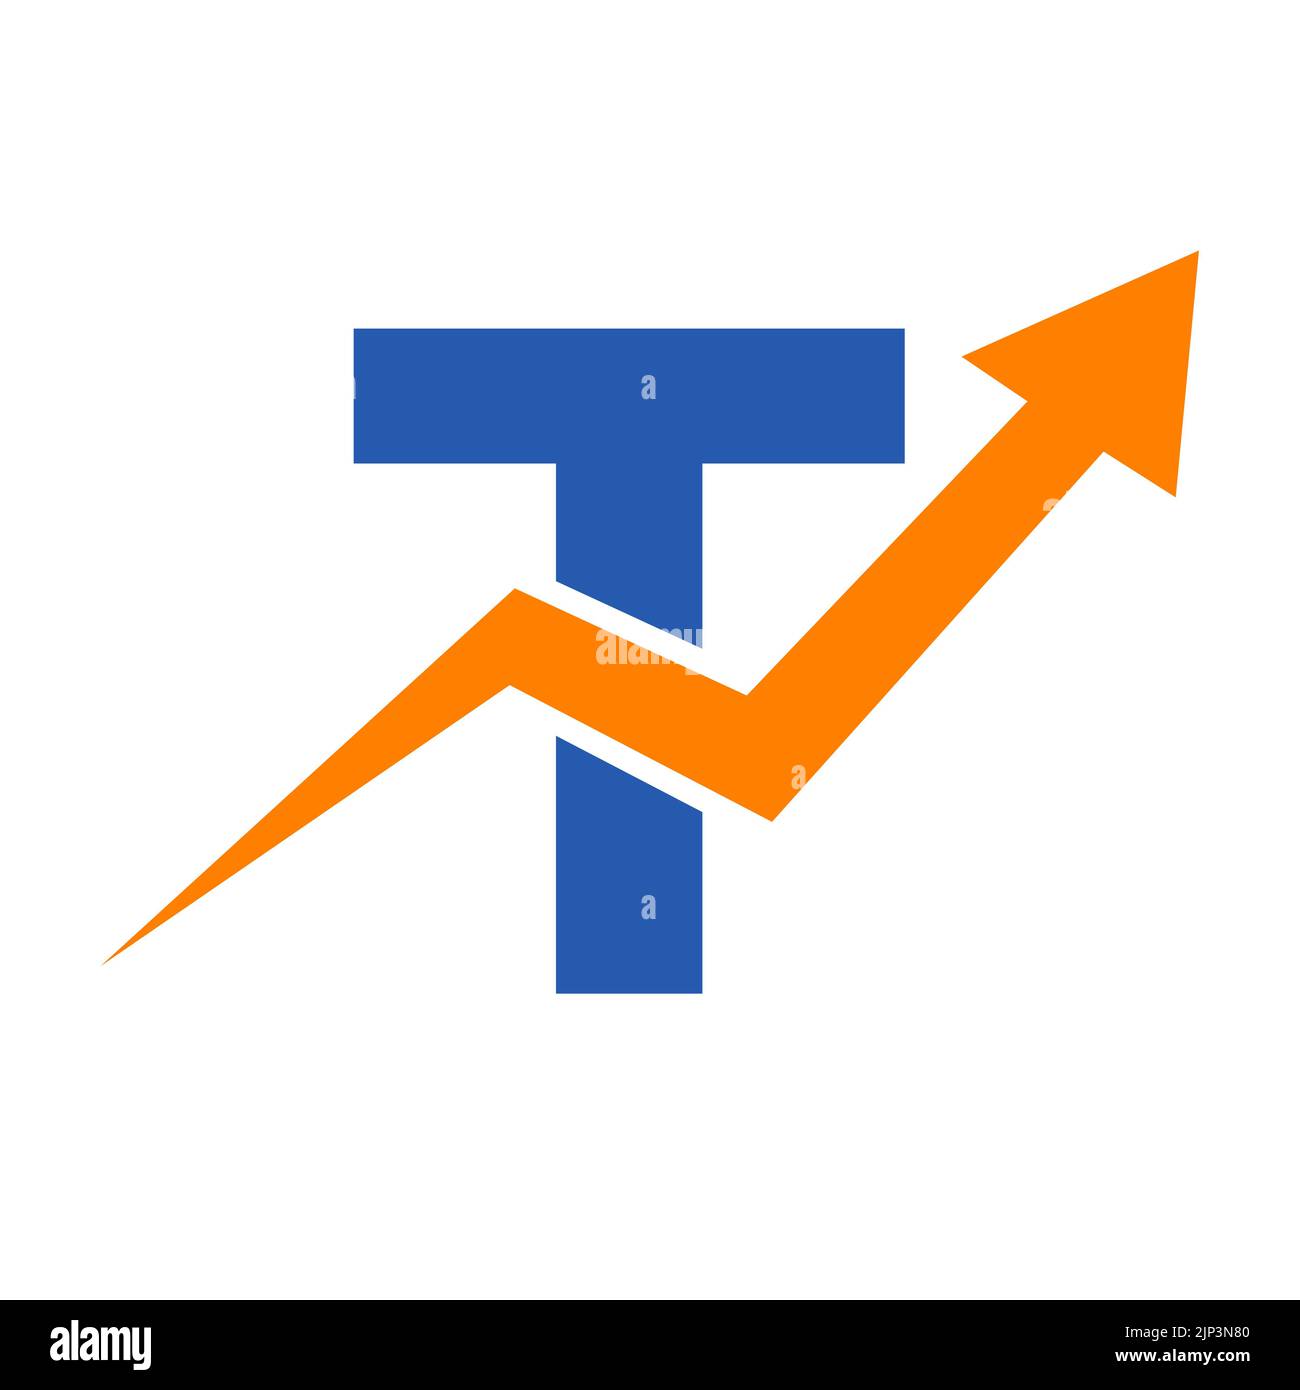 Logo financier lettre T. Concept de modèle de logo Finance et développement de l'investissement financier avec flèche de croissance des entreprises Illustration de Vecteur